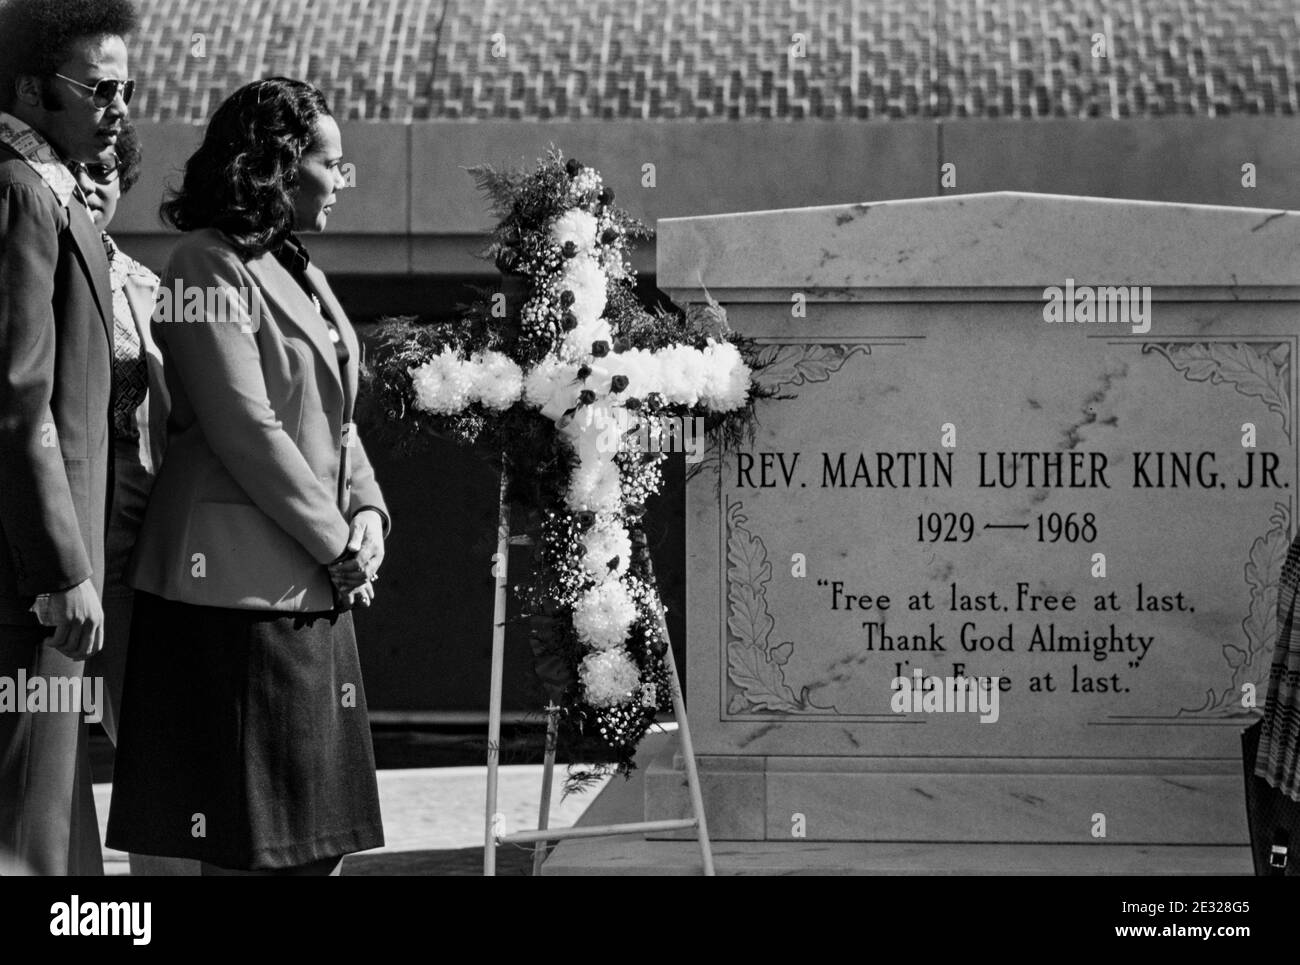 Coretta Scott King, veuve de Martin Luther King, le leader des droits civils tué, Jr., à la tombe de son mari au King Centre à Atlanta, GA. Banque D'Images